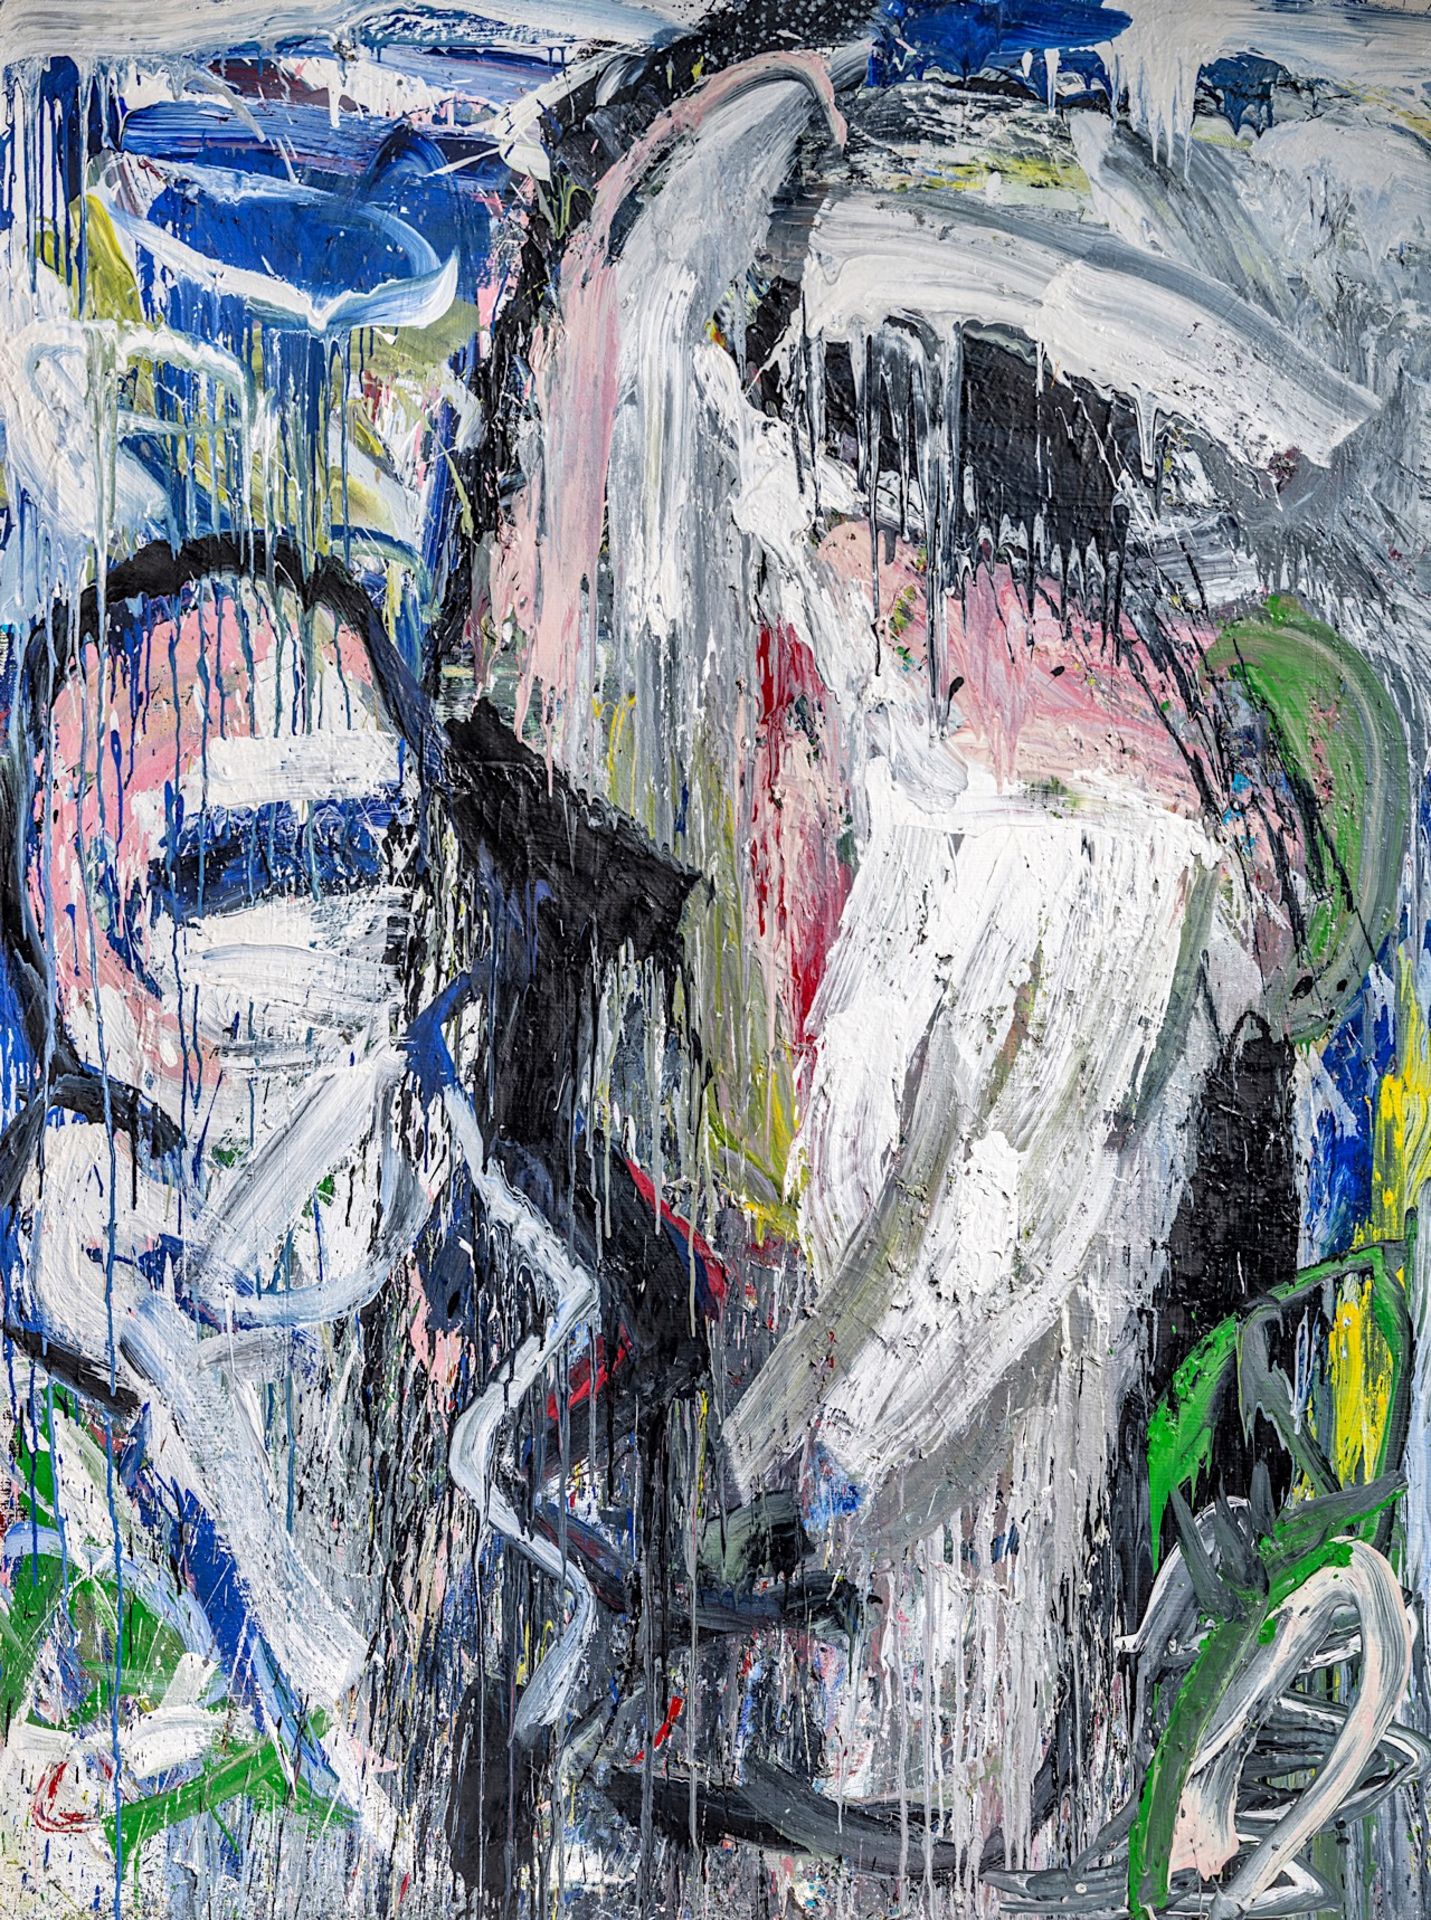 PREMIUM LOT - Philippe Vandenberg (1952-2009), 'Schilderij', diptych, 1985, oil on canvas - Bild 7 aus 12